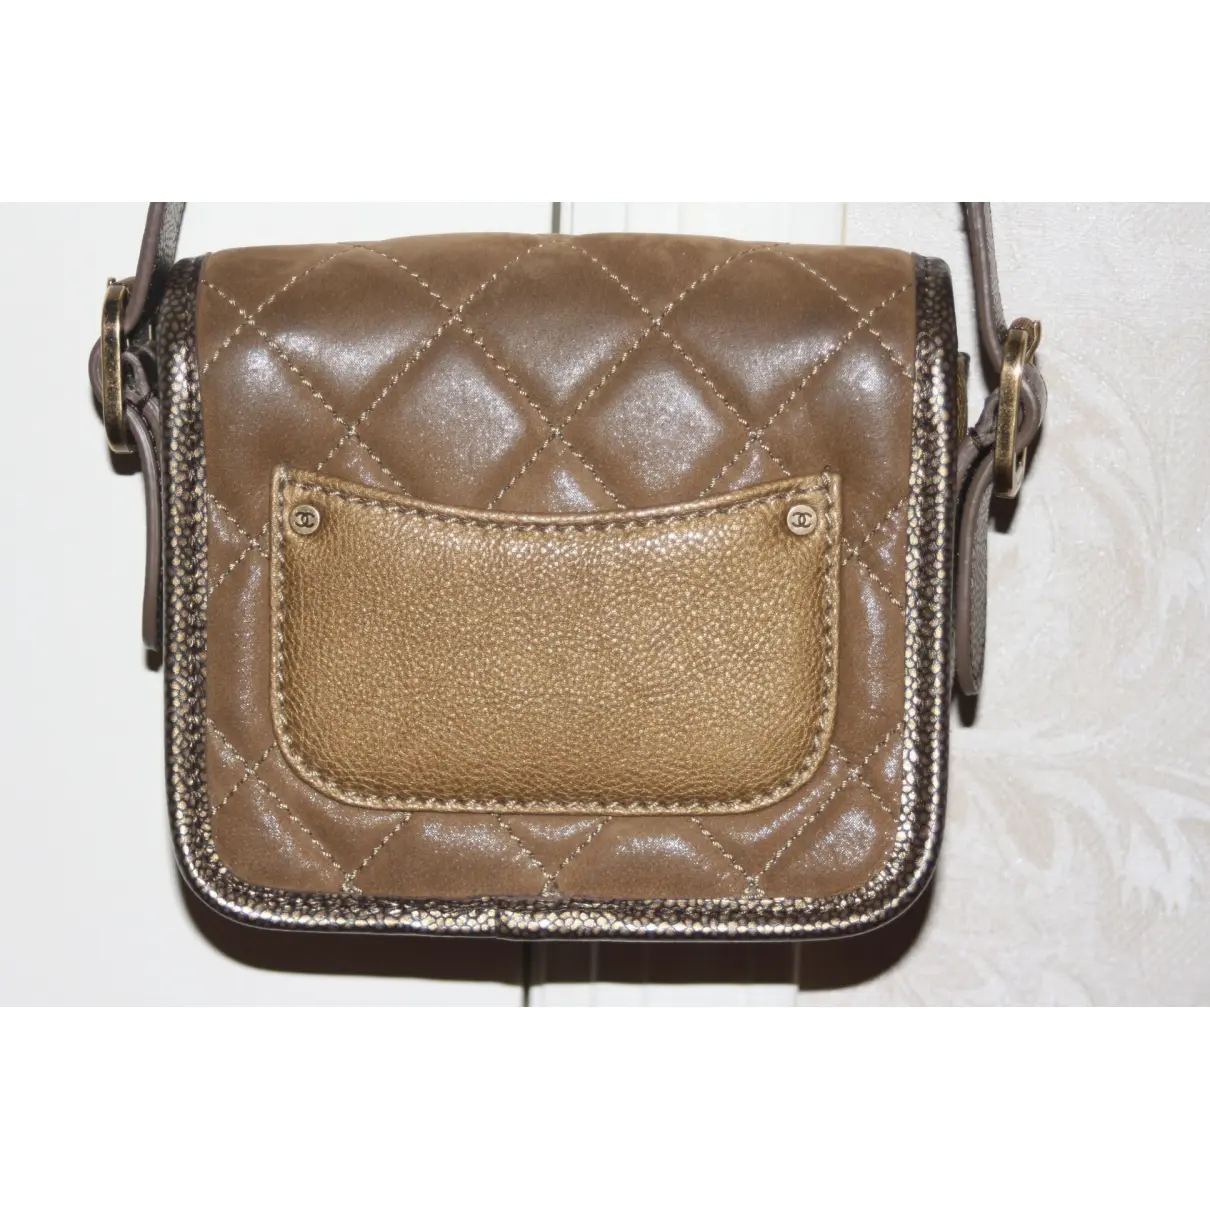 Business Affinity leather handbag Chanel - Vintage